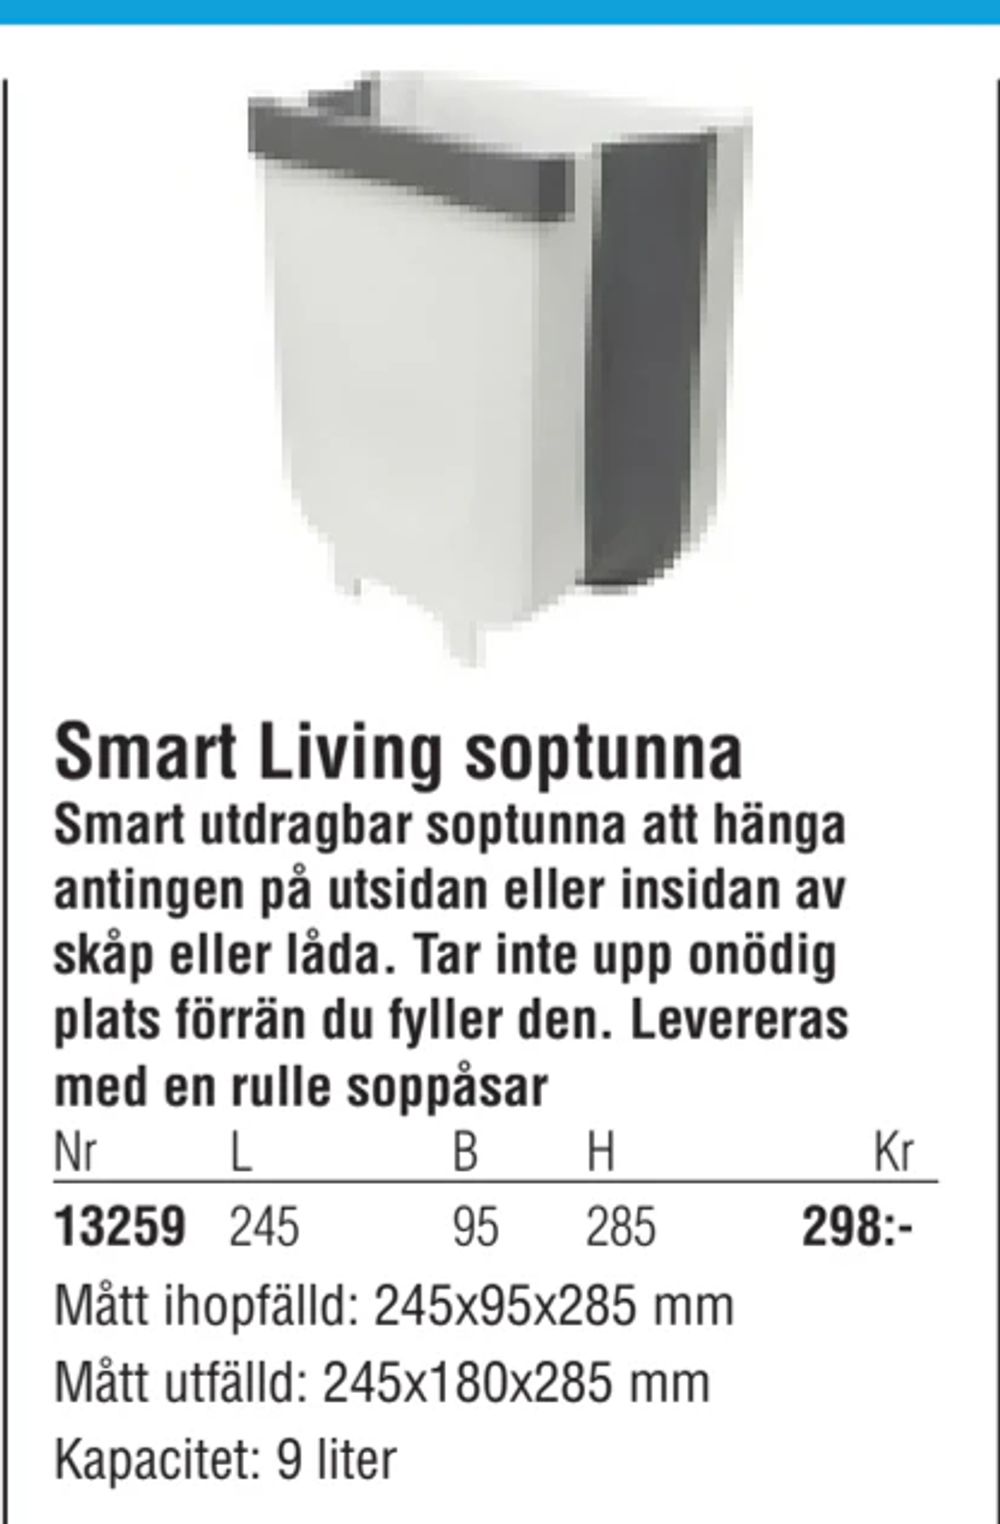 Erbjudanden på Smart Living soptunna från Erlandsons Brygga för 298 kr